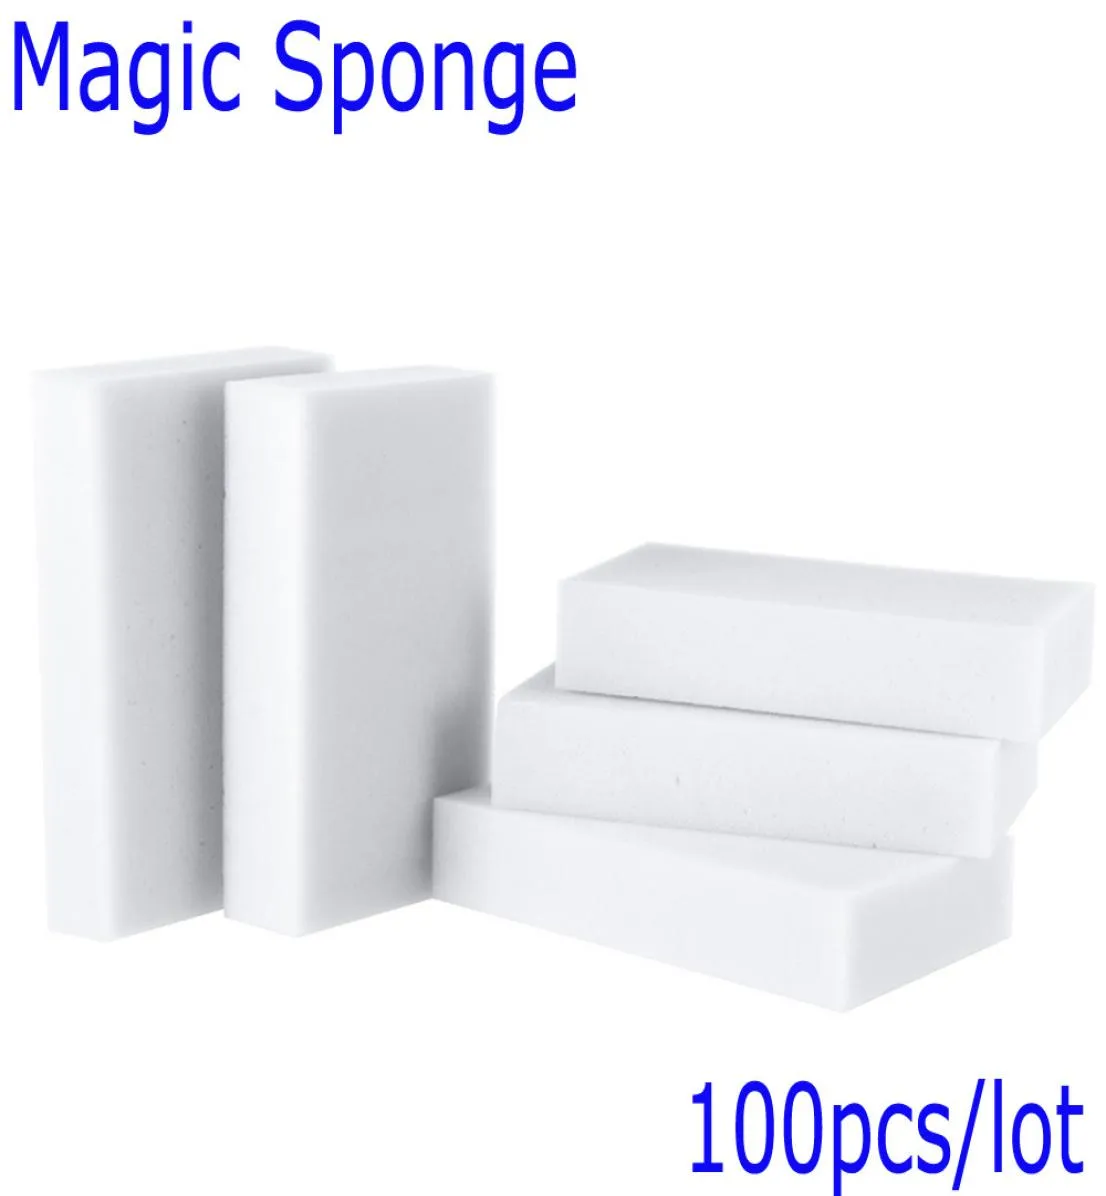 Esponja Magica Para Limpeza Magic Sponge Cleaner Eraser Melamine Sponge for Clease Cooking Tools Magic Eraser 100PCSLOT4885307